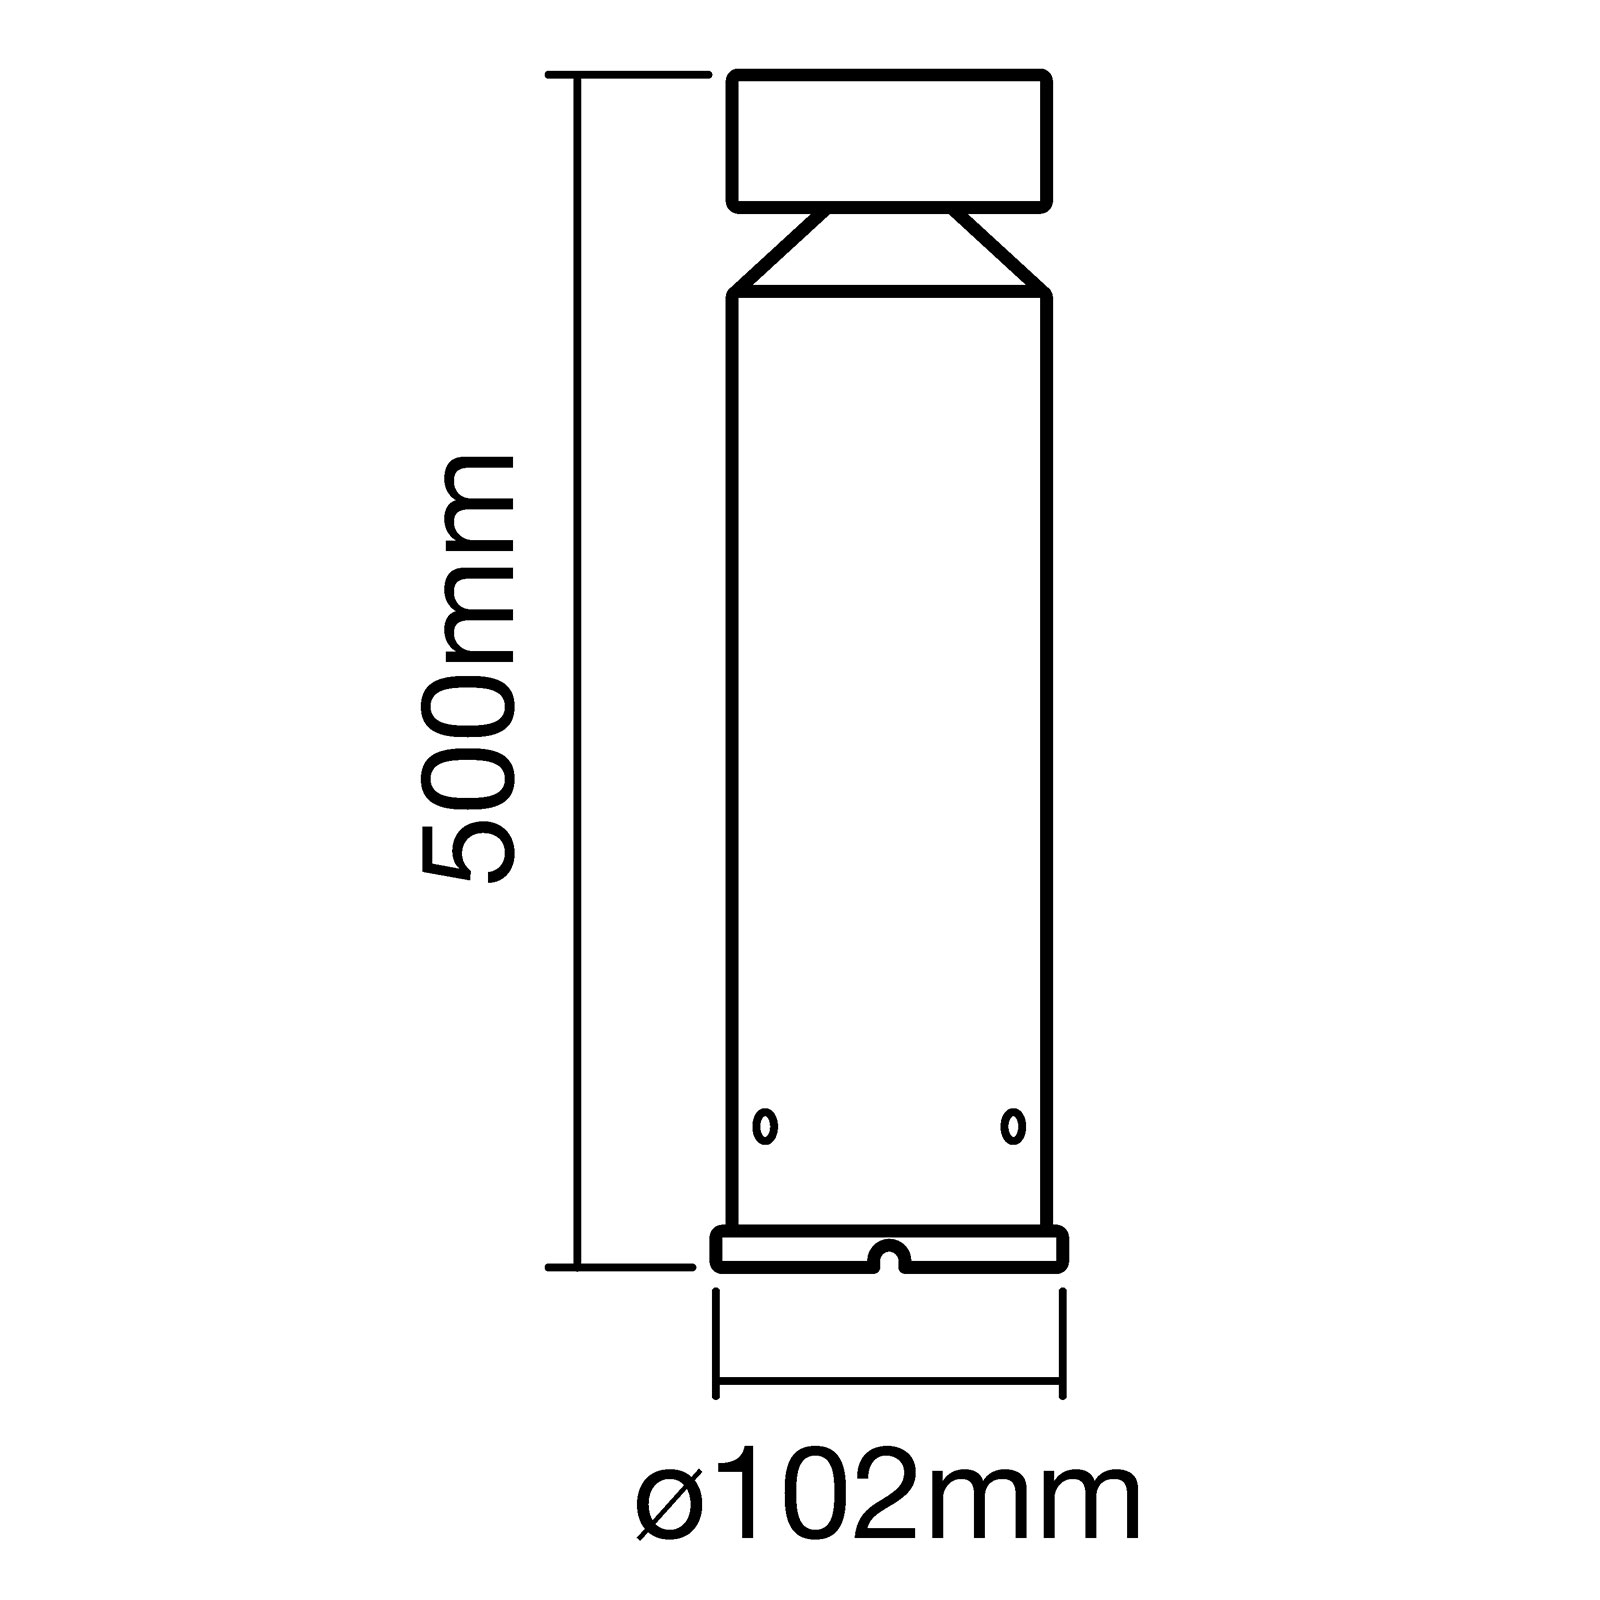 LEDVANCE Endura Style Cylinder LED sokkellamp